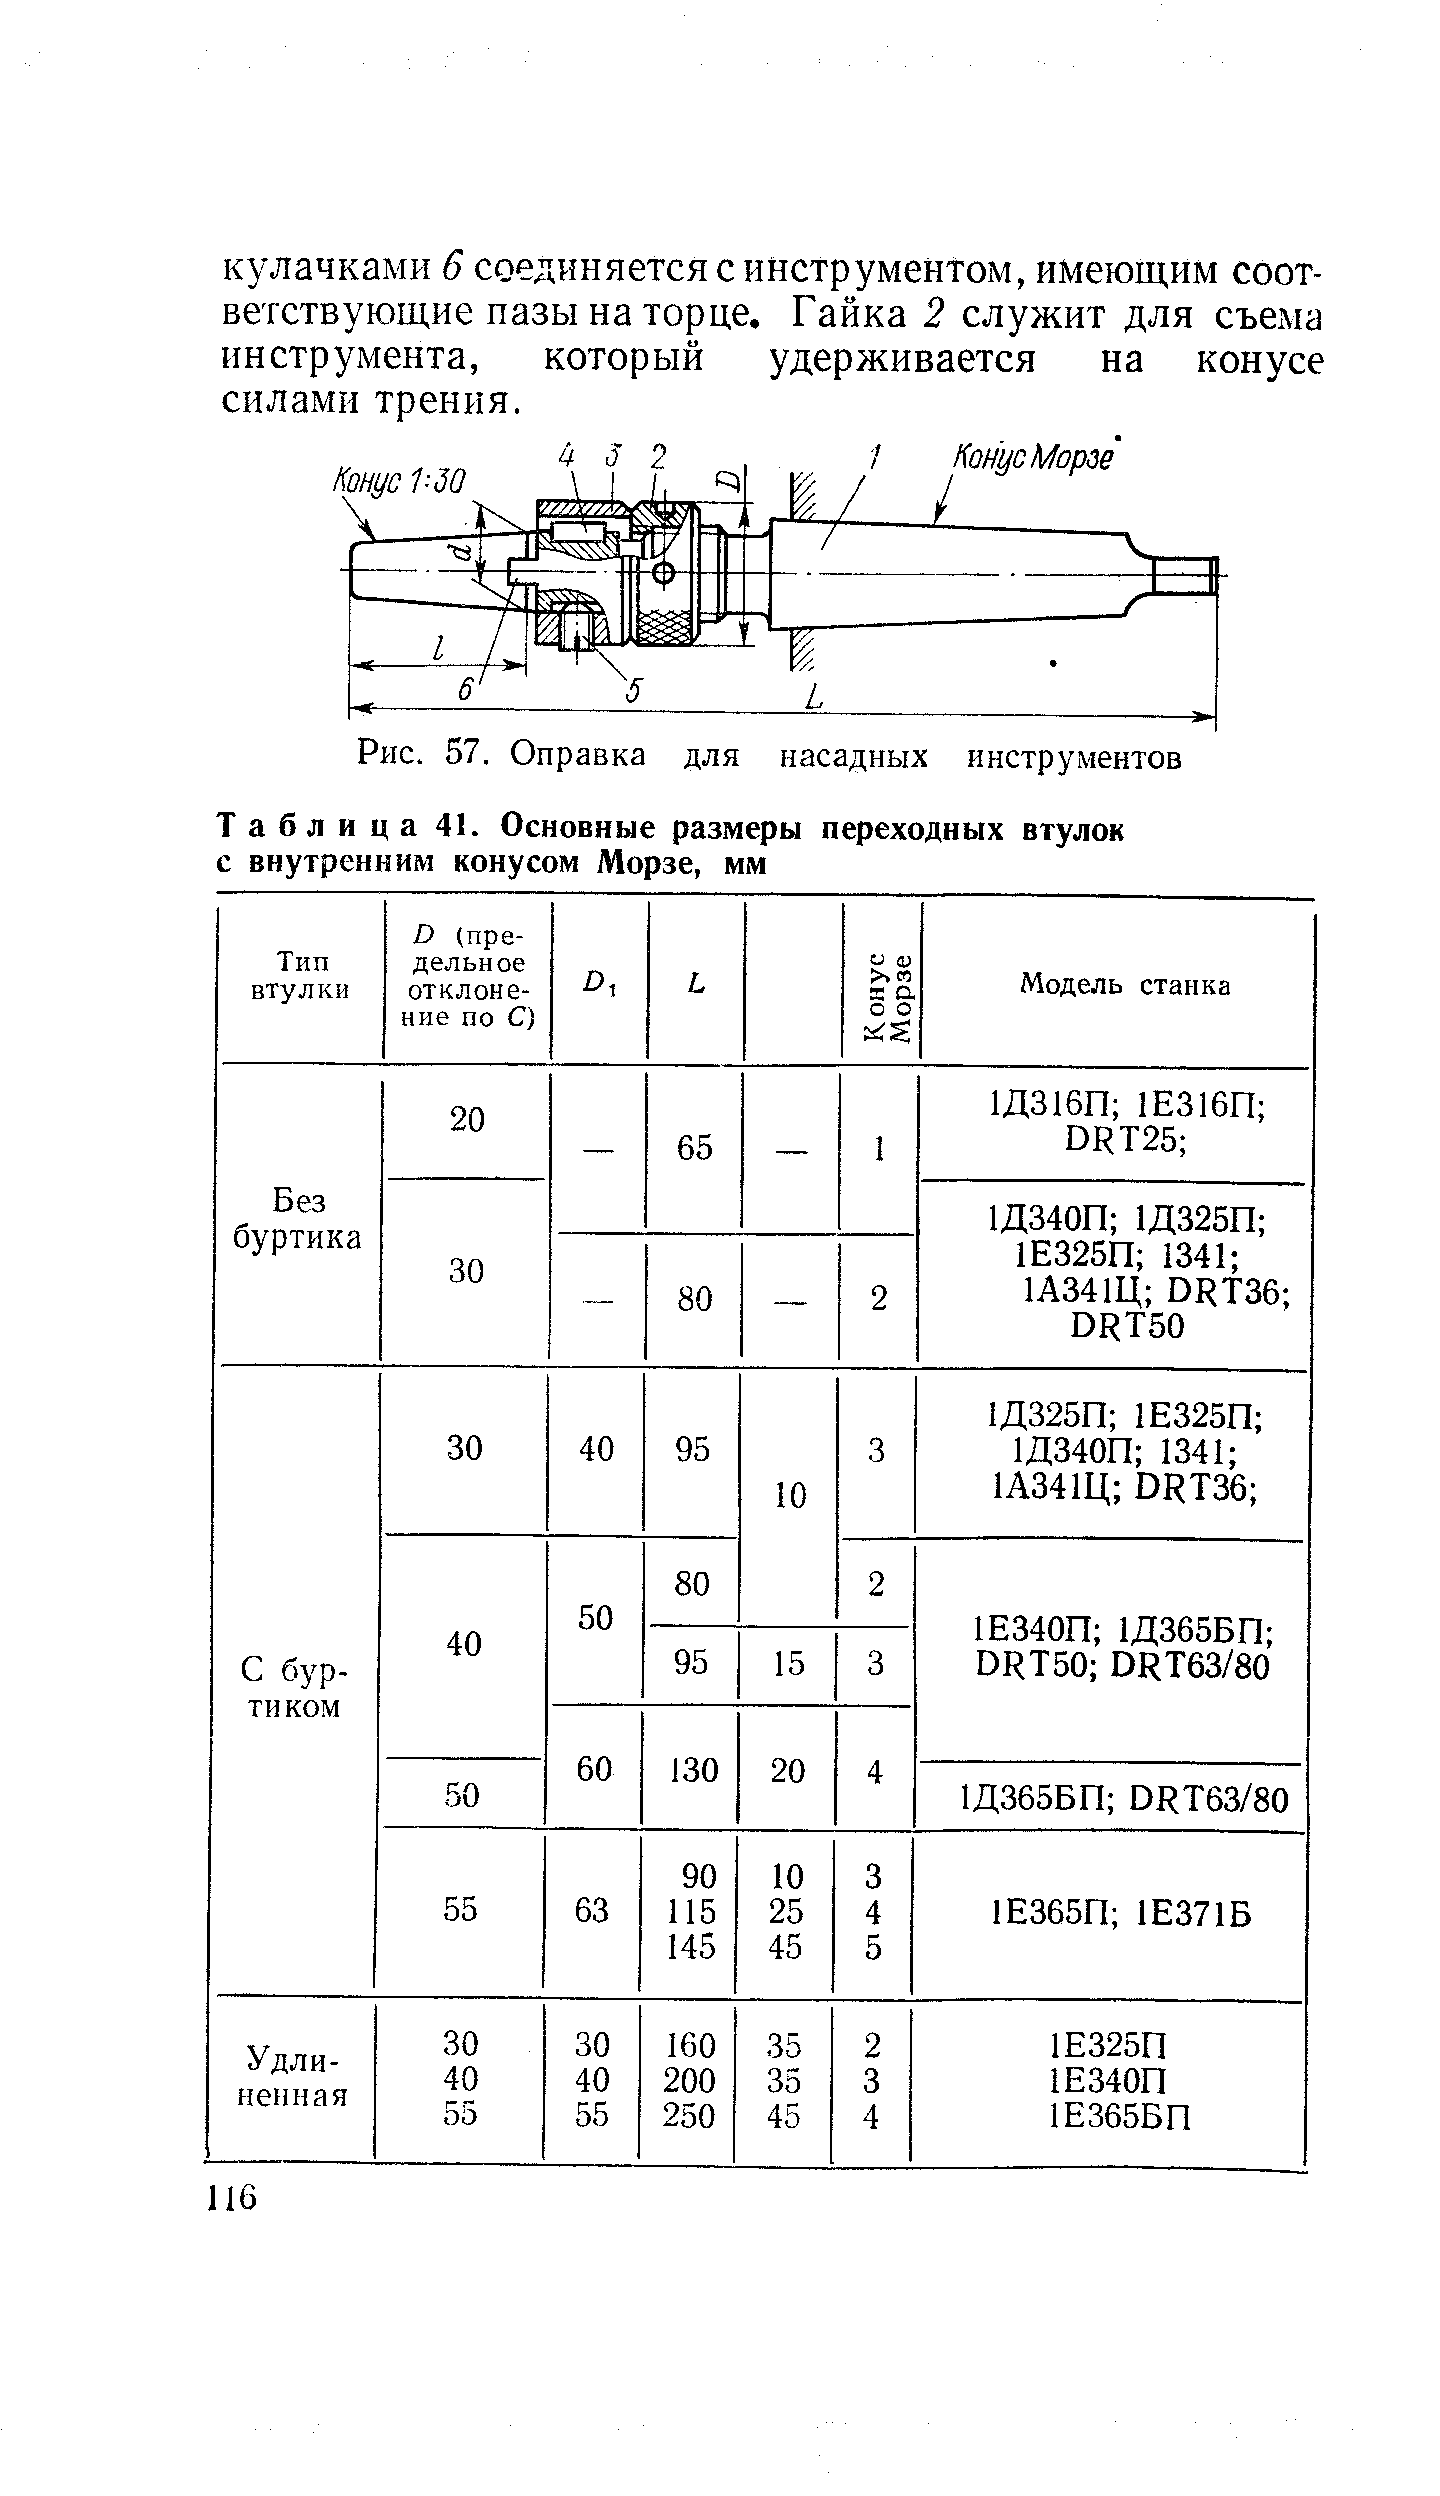 Таблица 41. Основные размеры переходных втулок с внутренним конусом Морзе, мм
